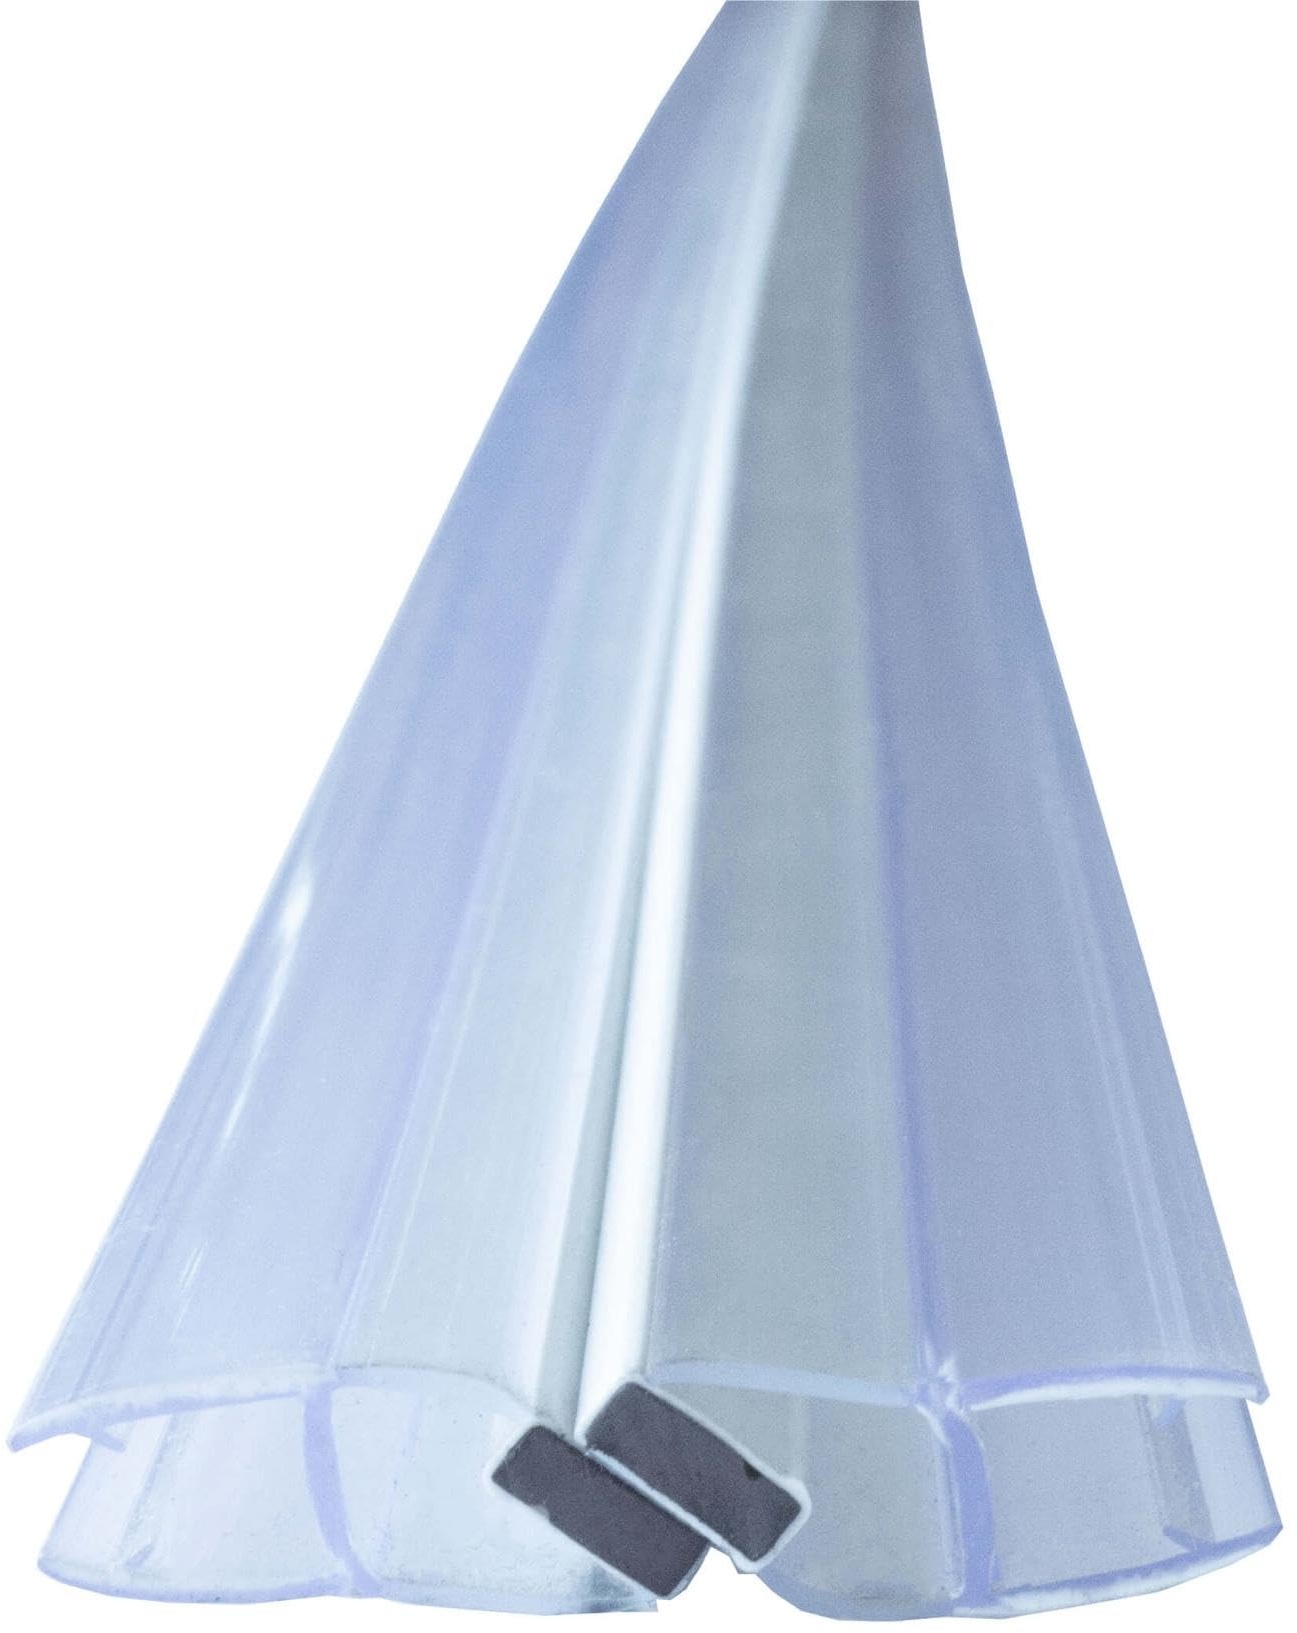 Duschdichtung Magnetdichtung für Duschtüren, 2m Transparent 8mm Glasstärke Schließwinkel von 90 & 180 Grad, versetzt, Schiebetür, einseitige Öffnung